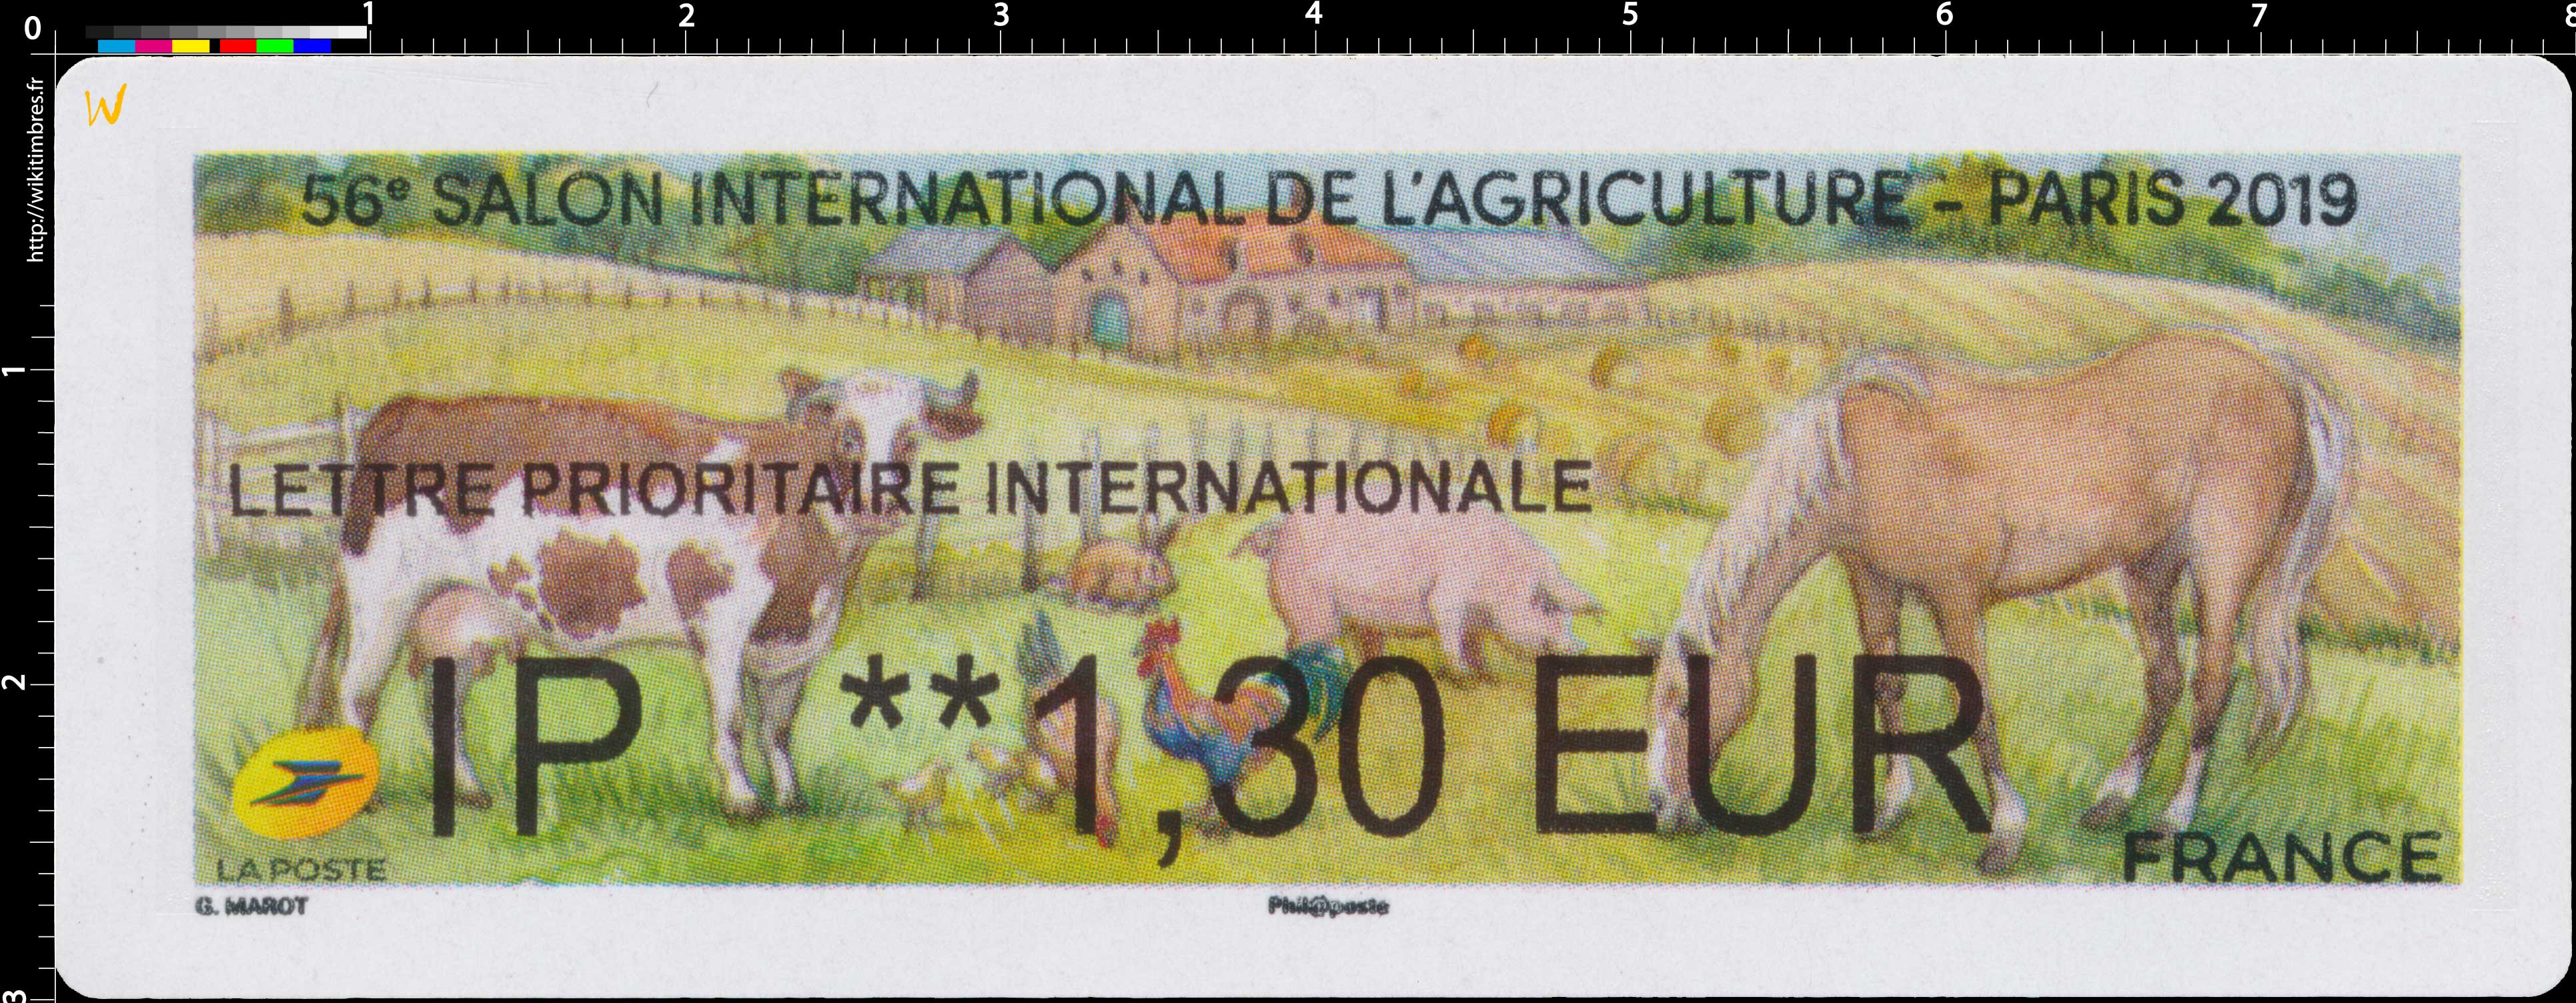 2019 56e Salon international de l'agriculture - Paris